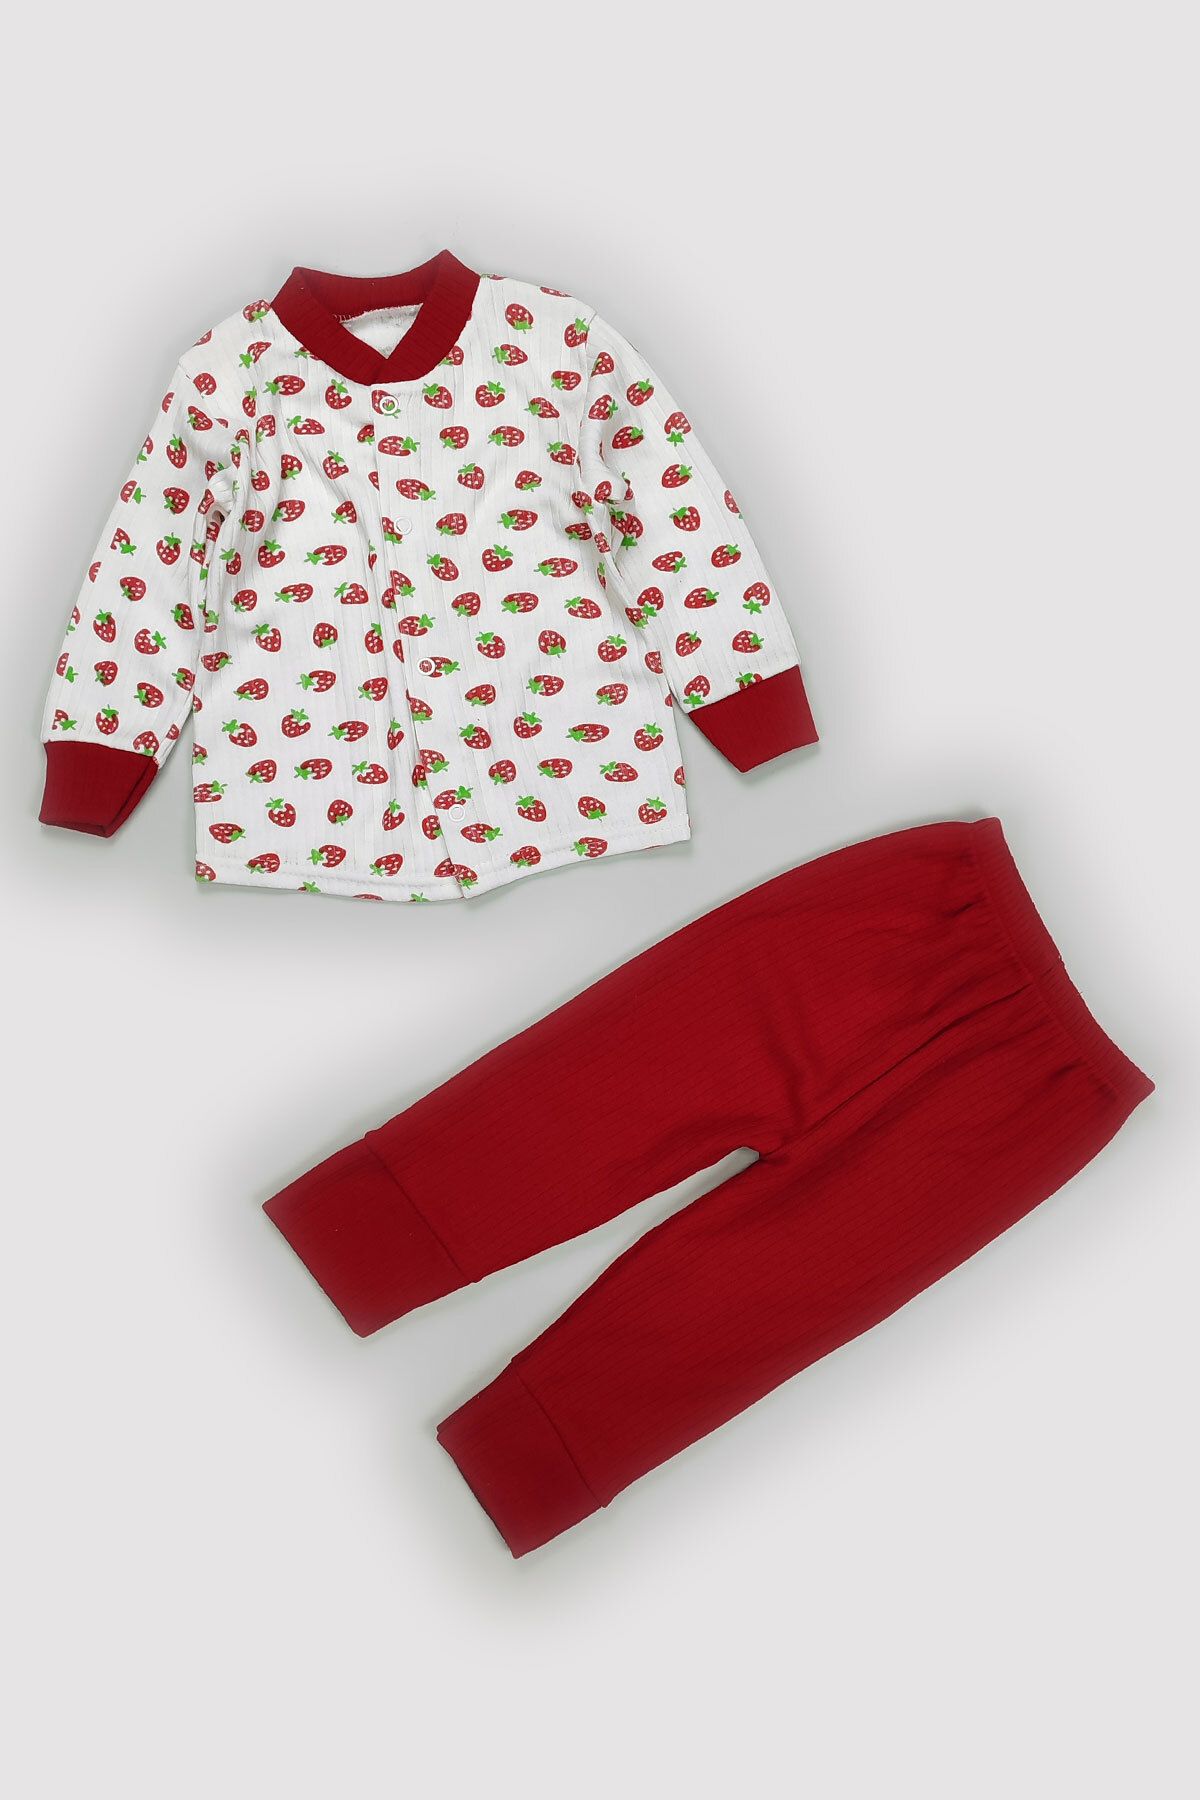 Peki Bebek 5 Al 4 Öde Çocuk Pamuklu Çizgi Mevsimlik Raporlu Interlok Emprime 2 Parça Pijama Takimi 14420